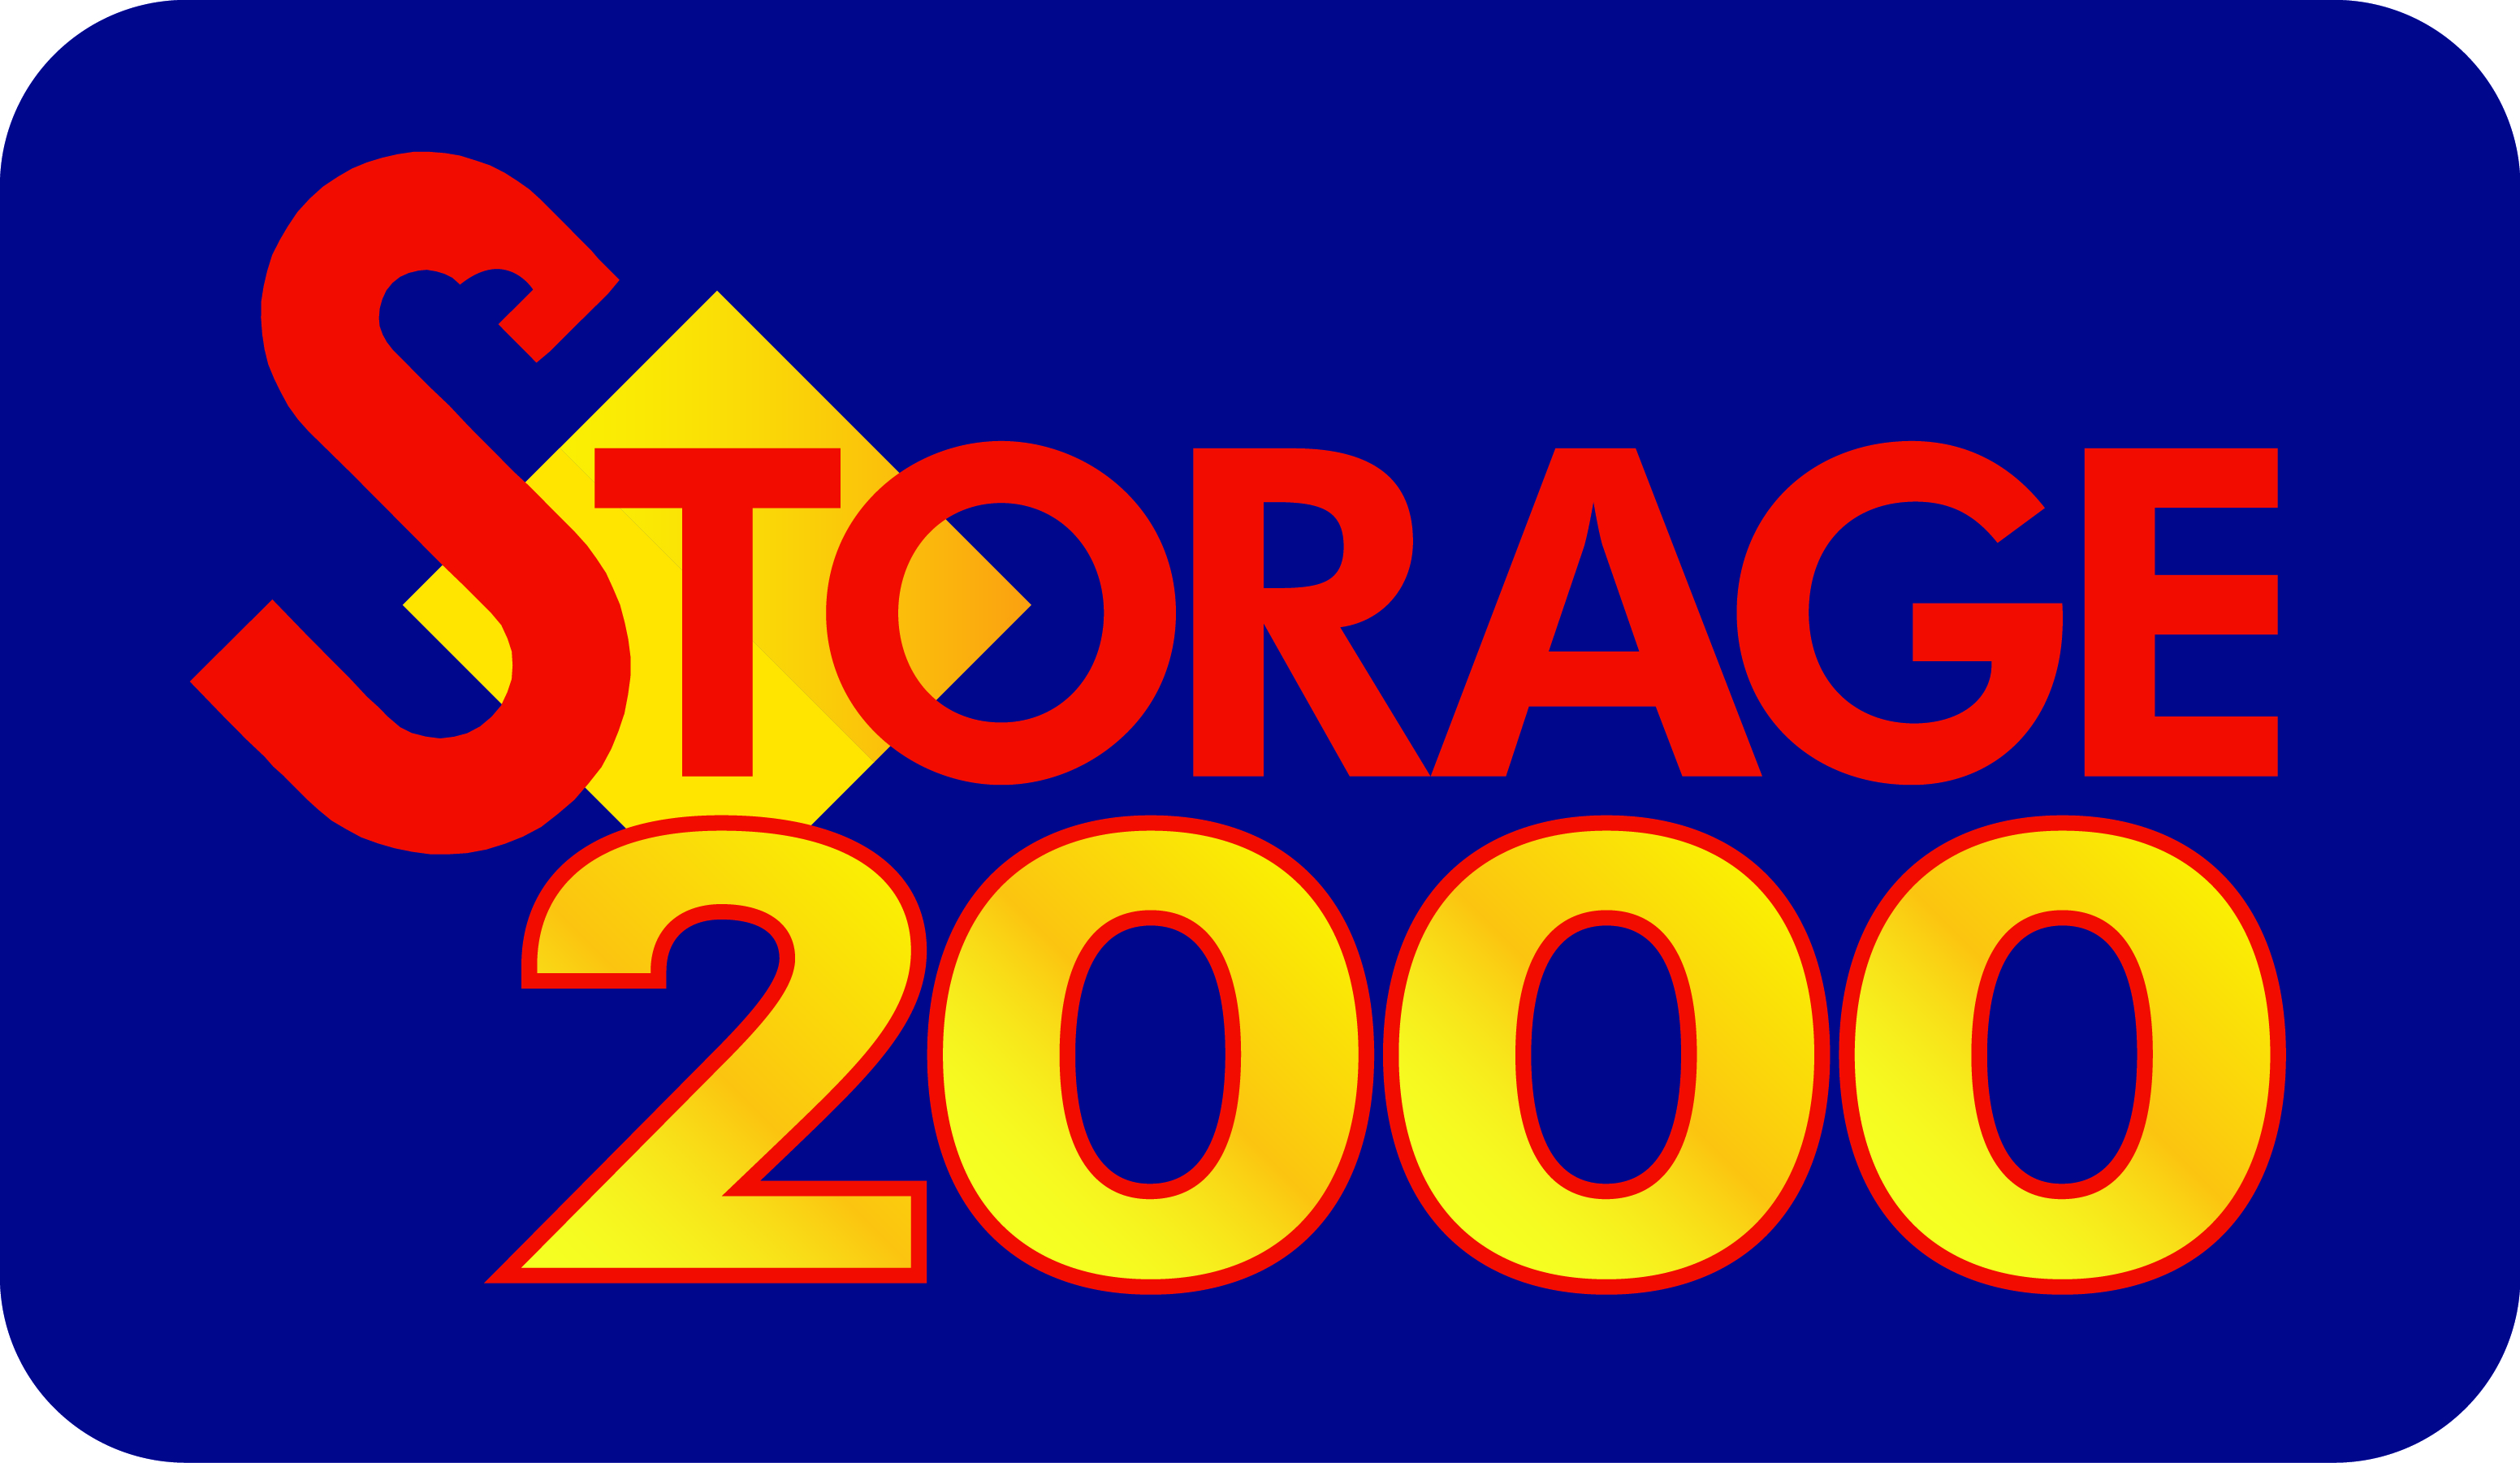 Storage 2000